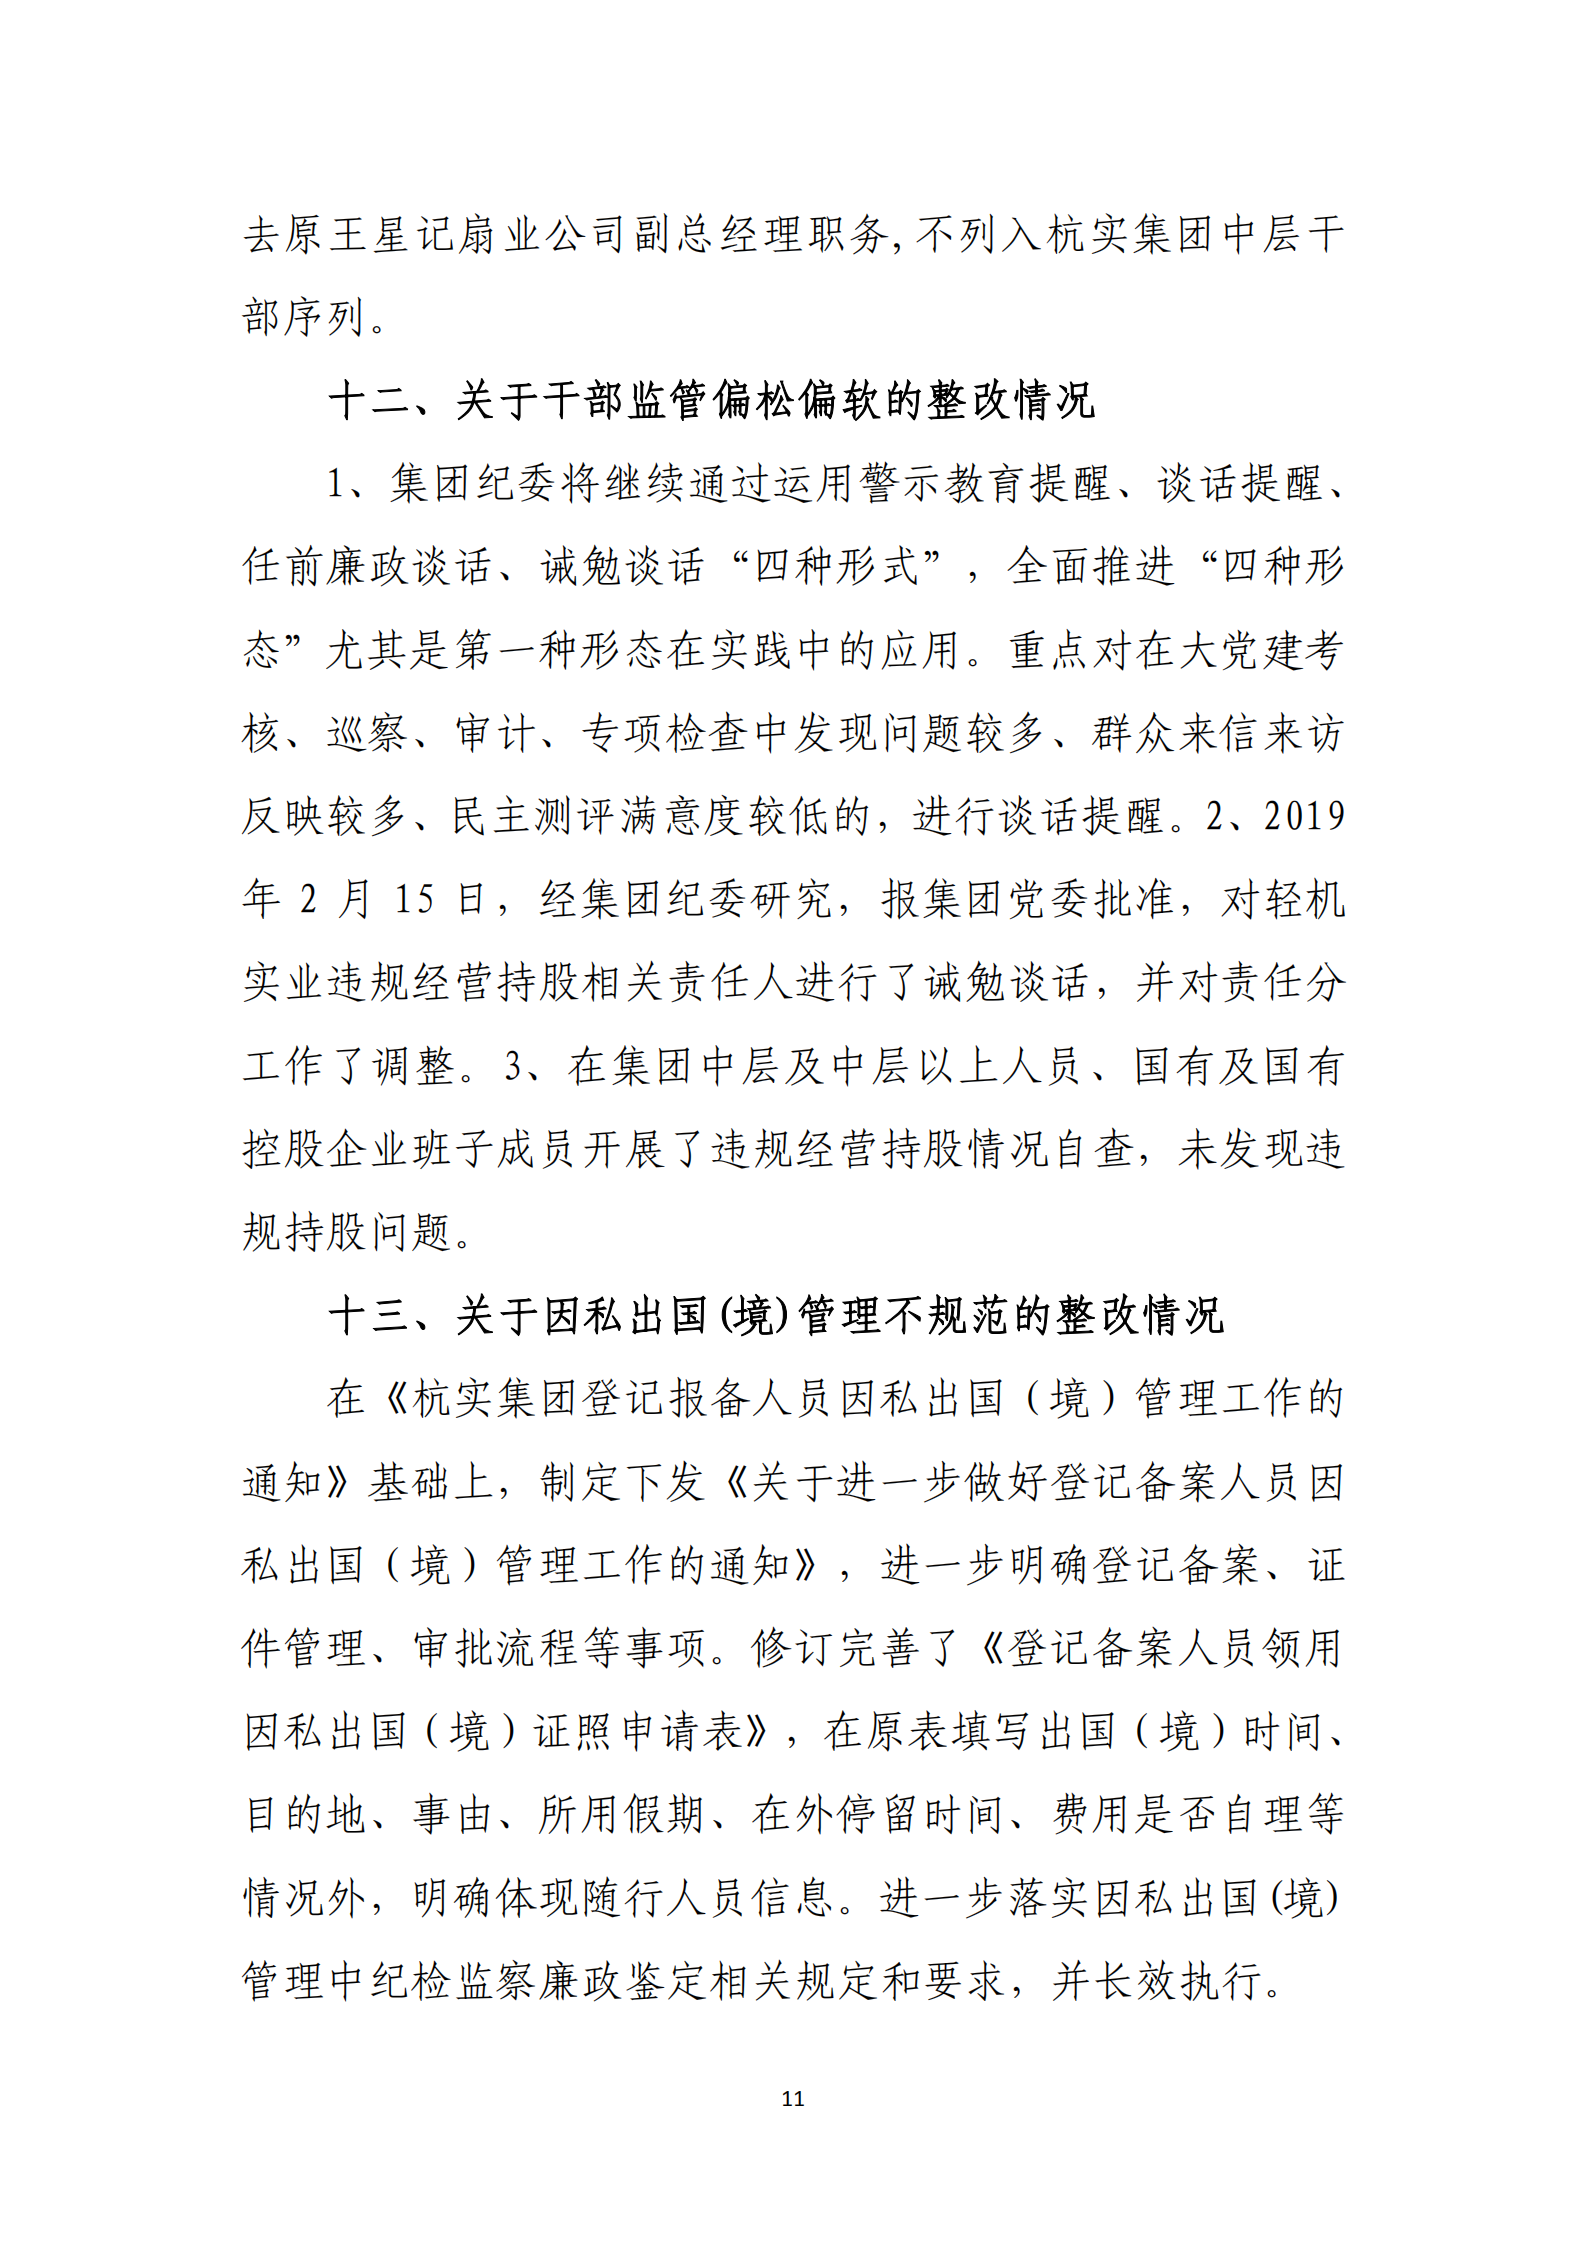 【体育365官方网站】中国有限公司党委关于巡察整改情况的通报_10.png